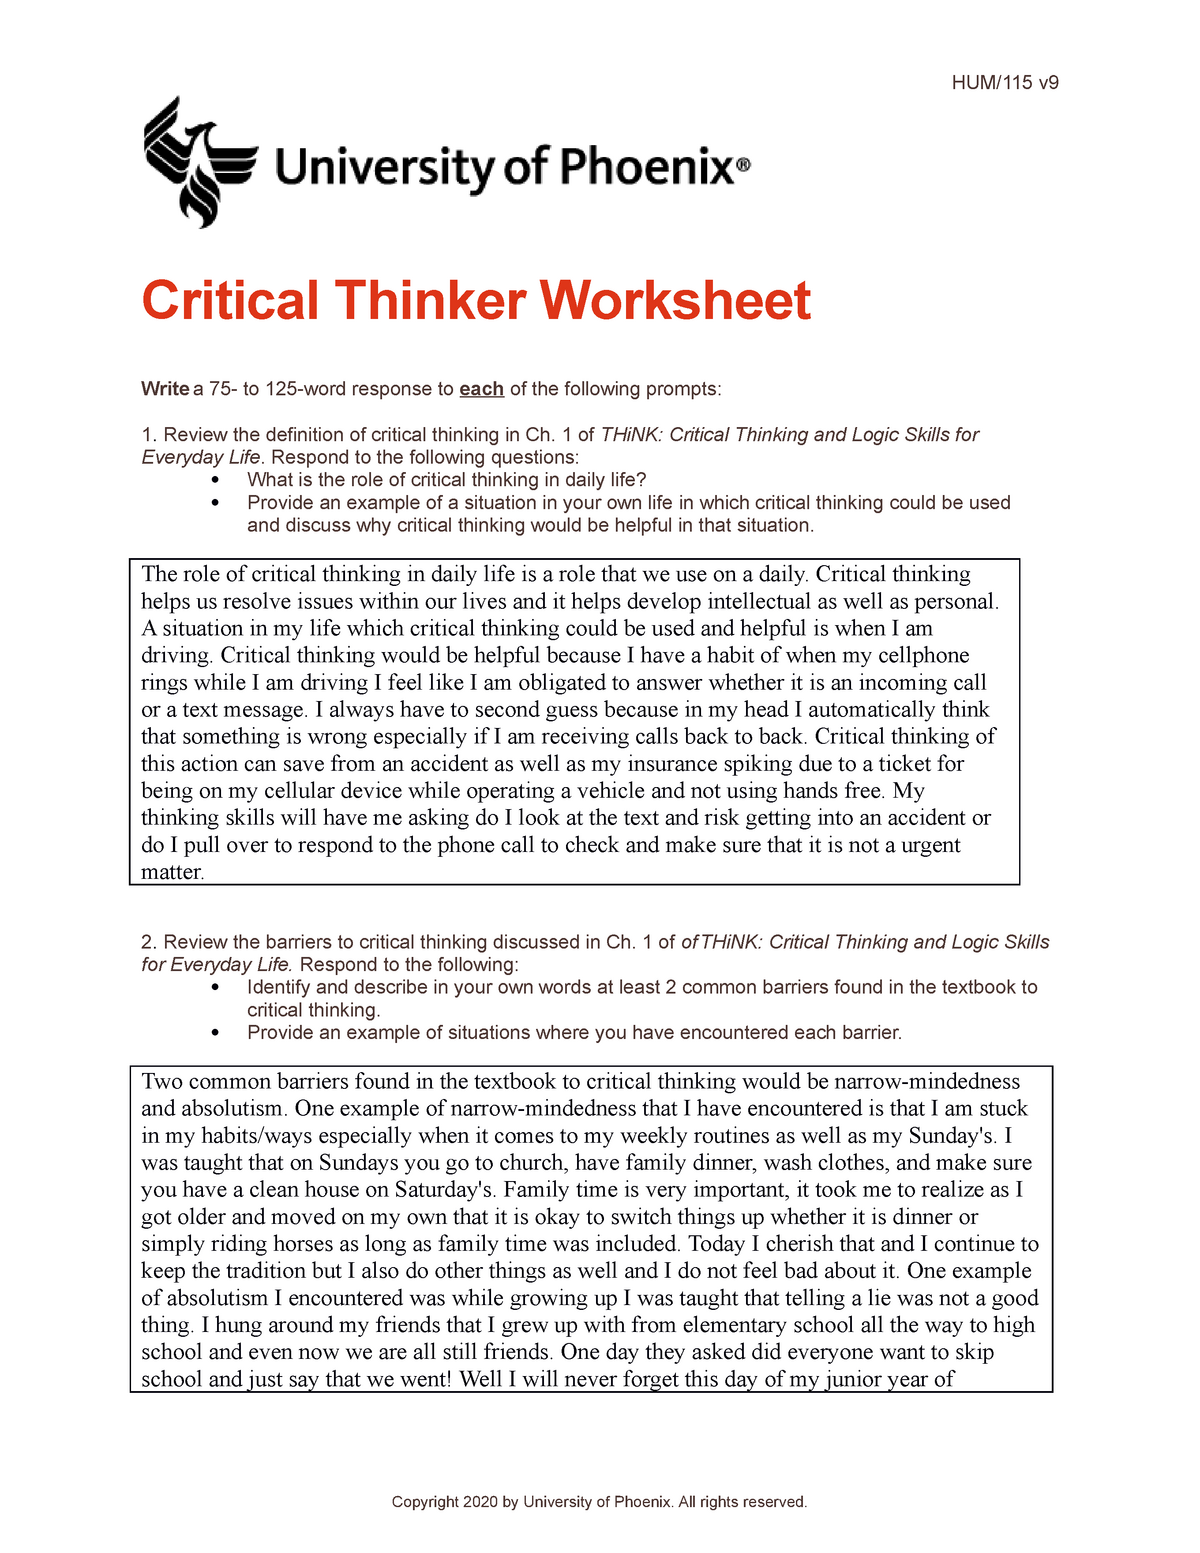 hum 115 critical thinking worksheet